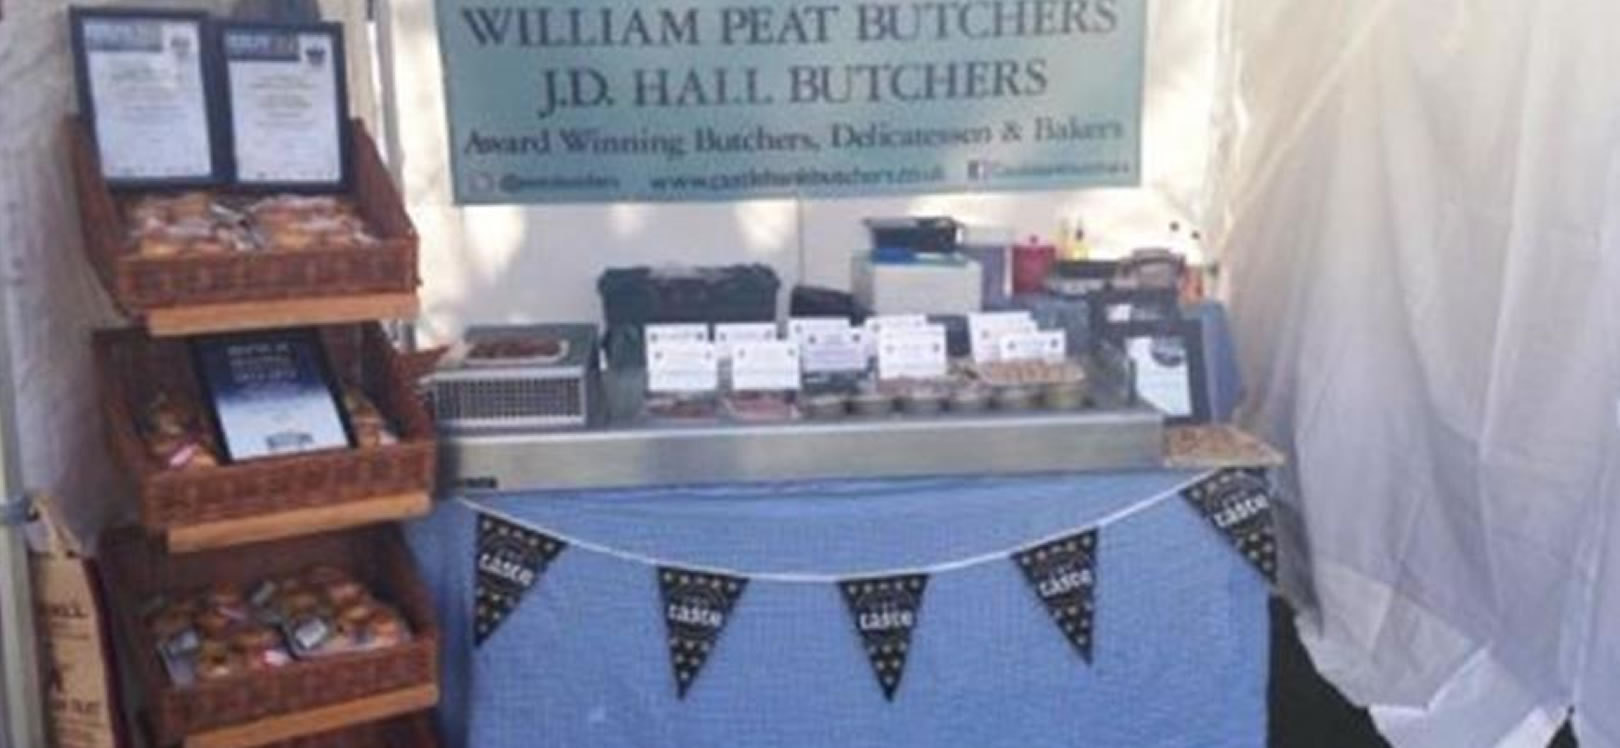 William Peat Butchers